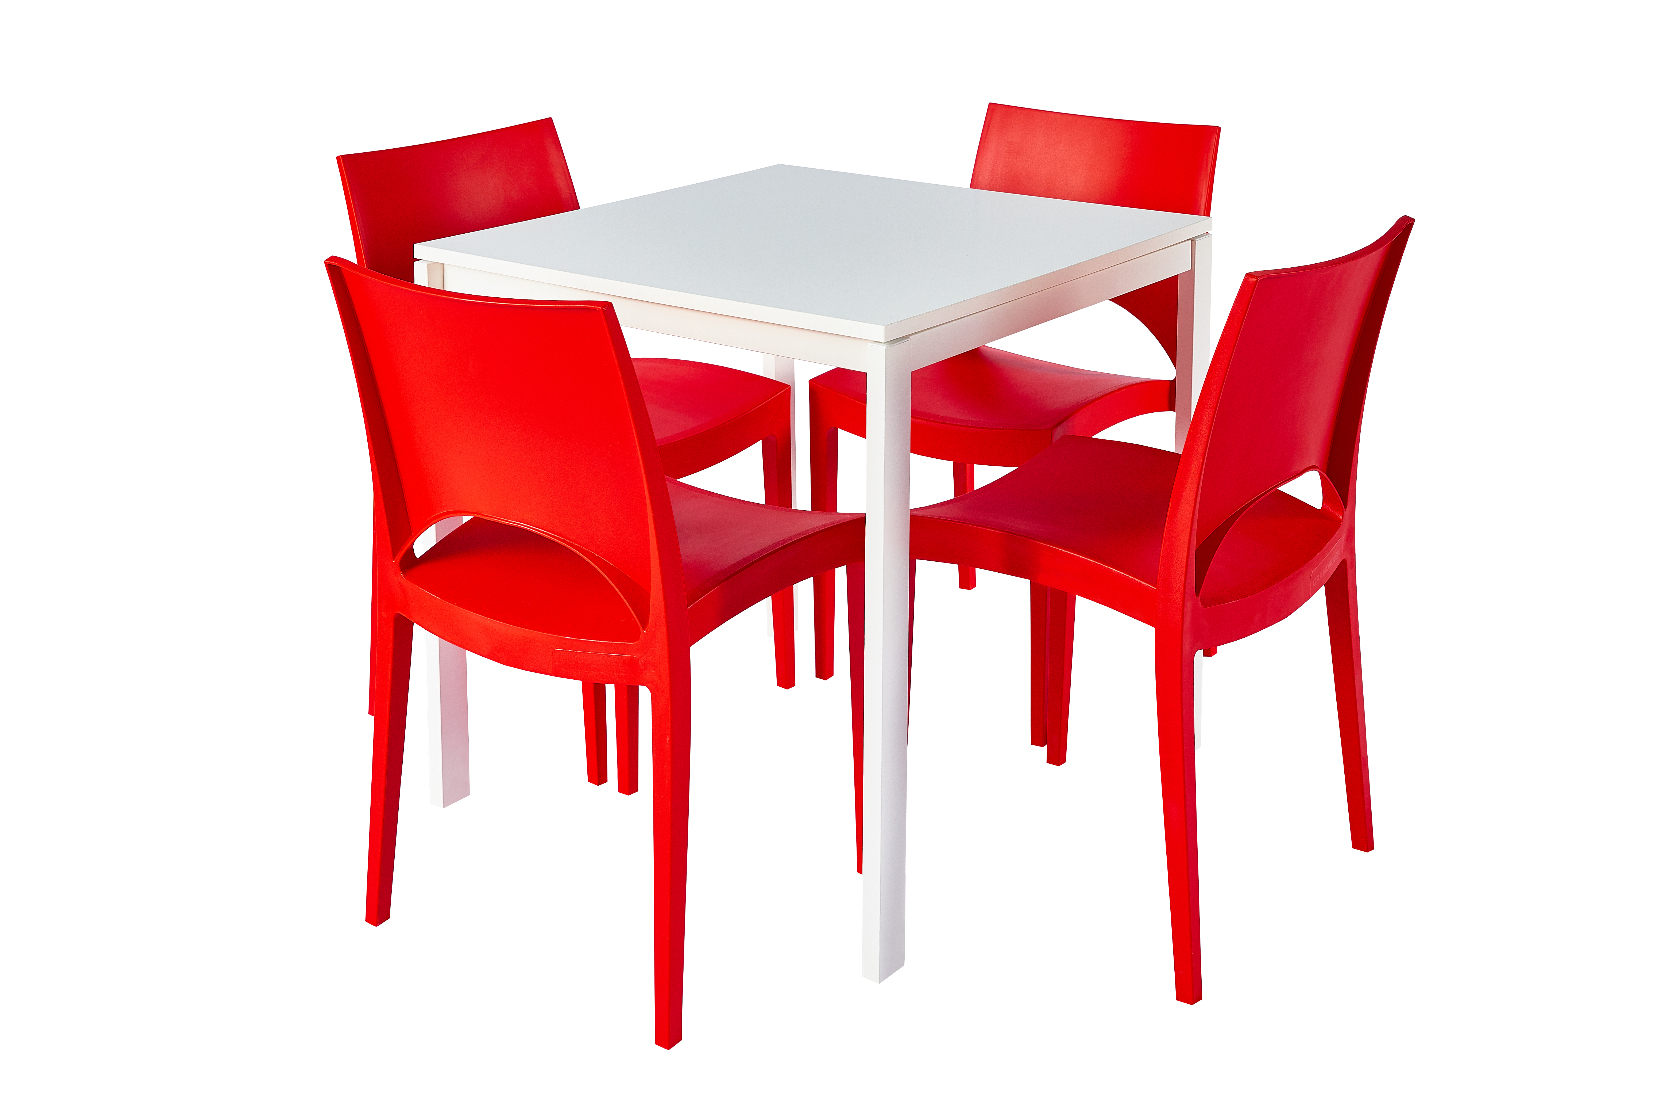 75x75 konferencia asztal piros paris szekkel.jpg